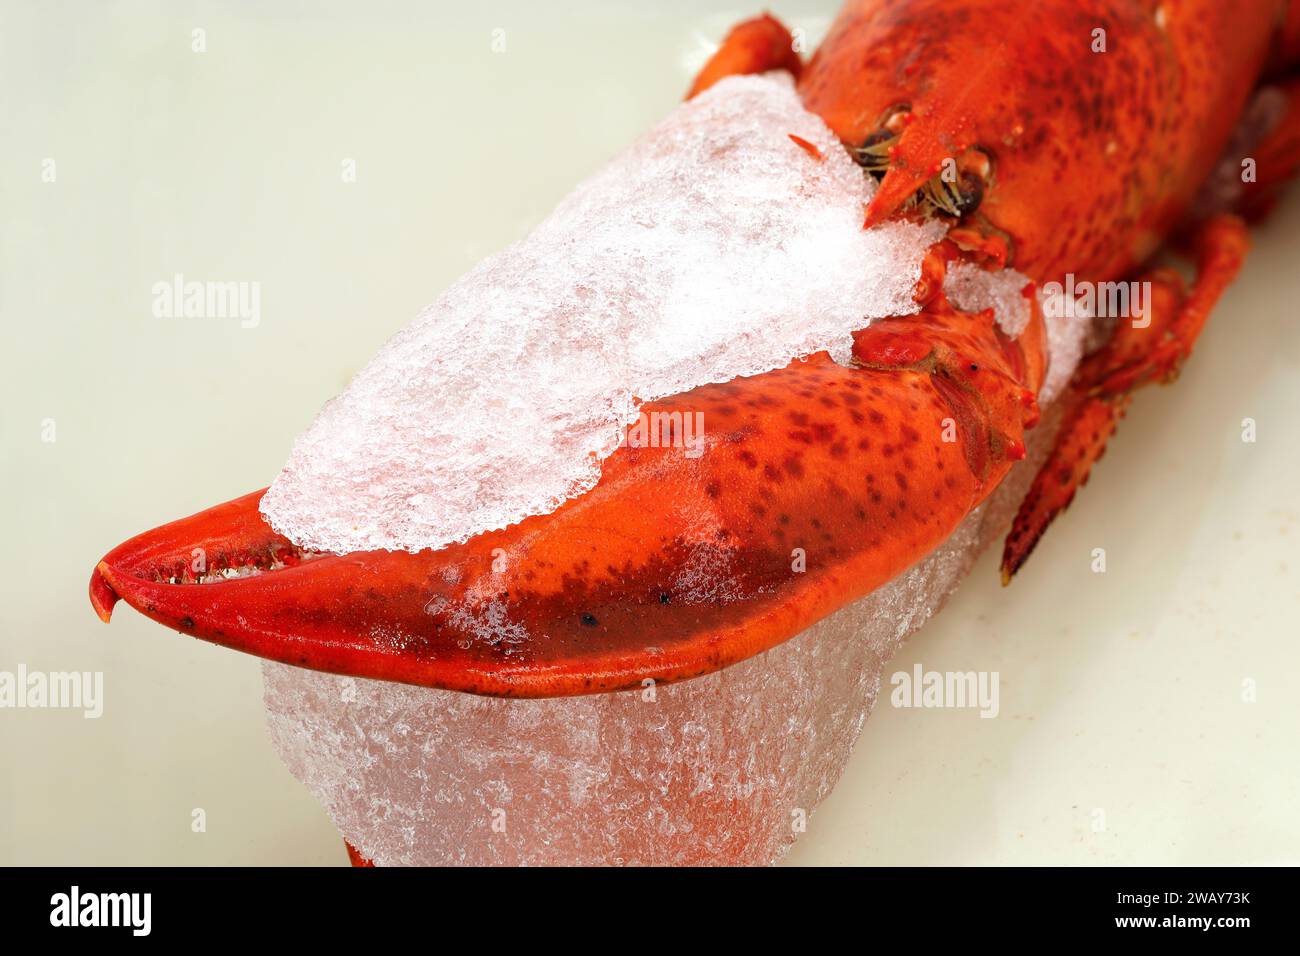 cierre de la mitad de la langosta congelada, pre-cocida al descongelar en un tazón, preparando mariscos descongelados Foto de stock